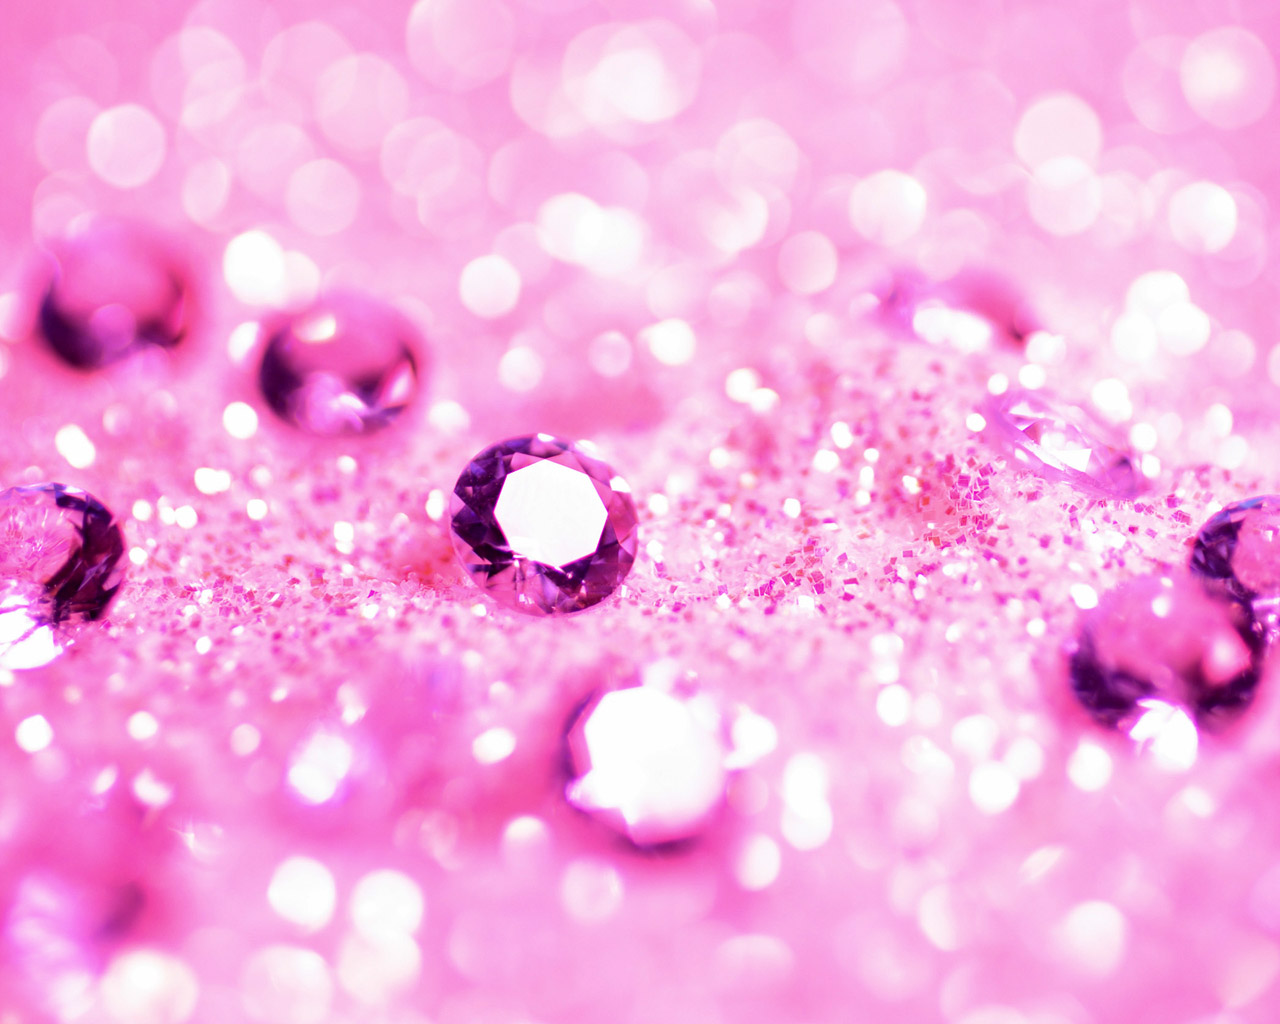 Pink Diamonds Wallpaper Desktop Image Amp Pictures Becuo